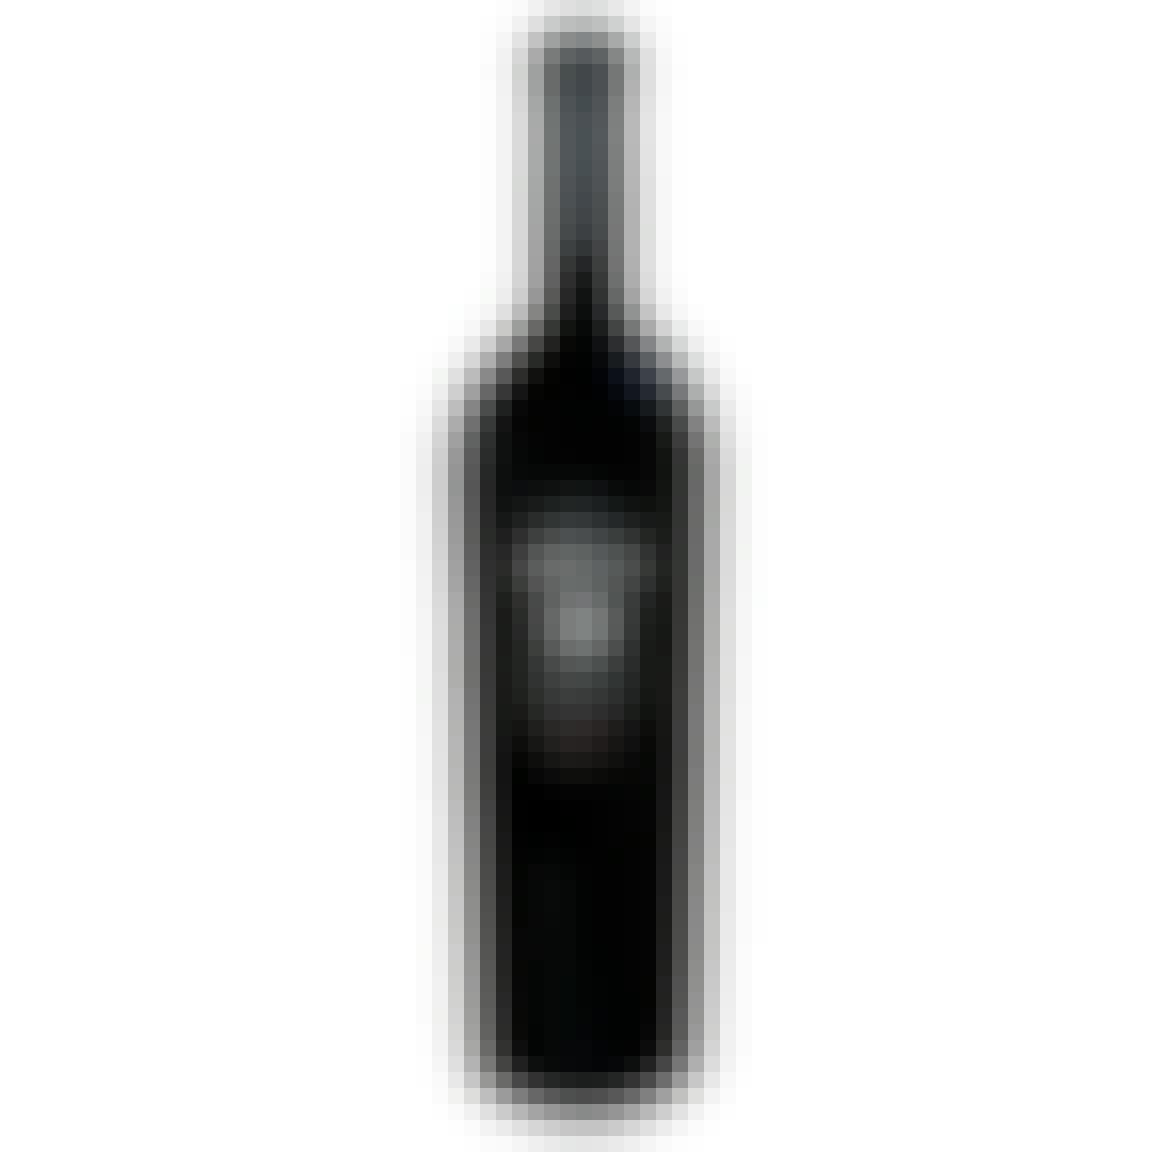 BRAND Wines Brio Cabernet Sauvignon 2014 750ml